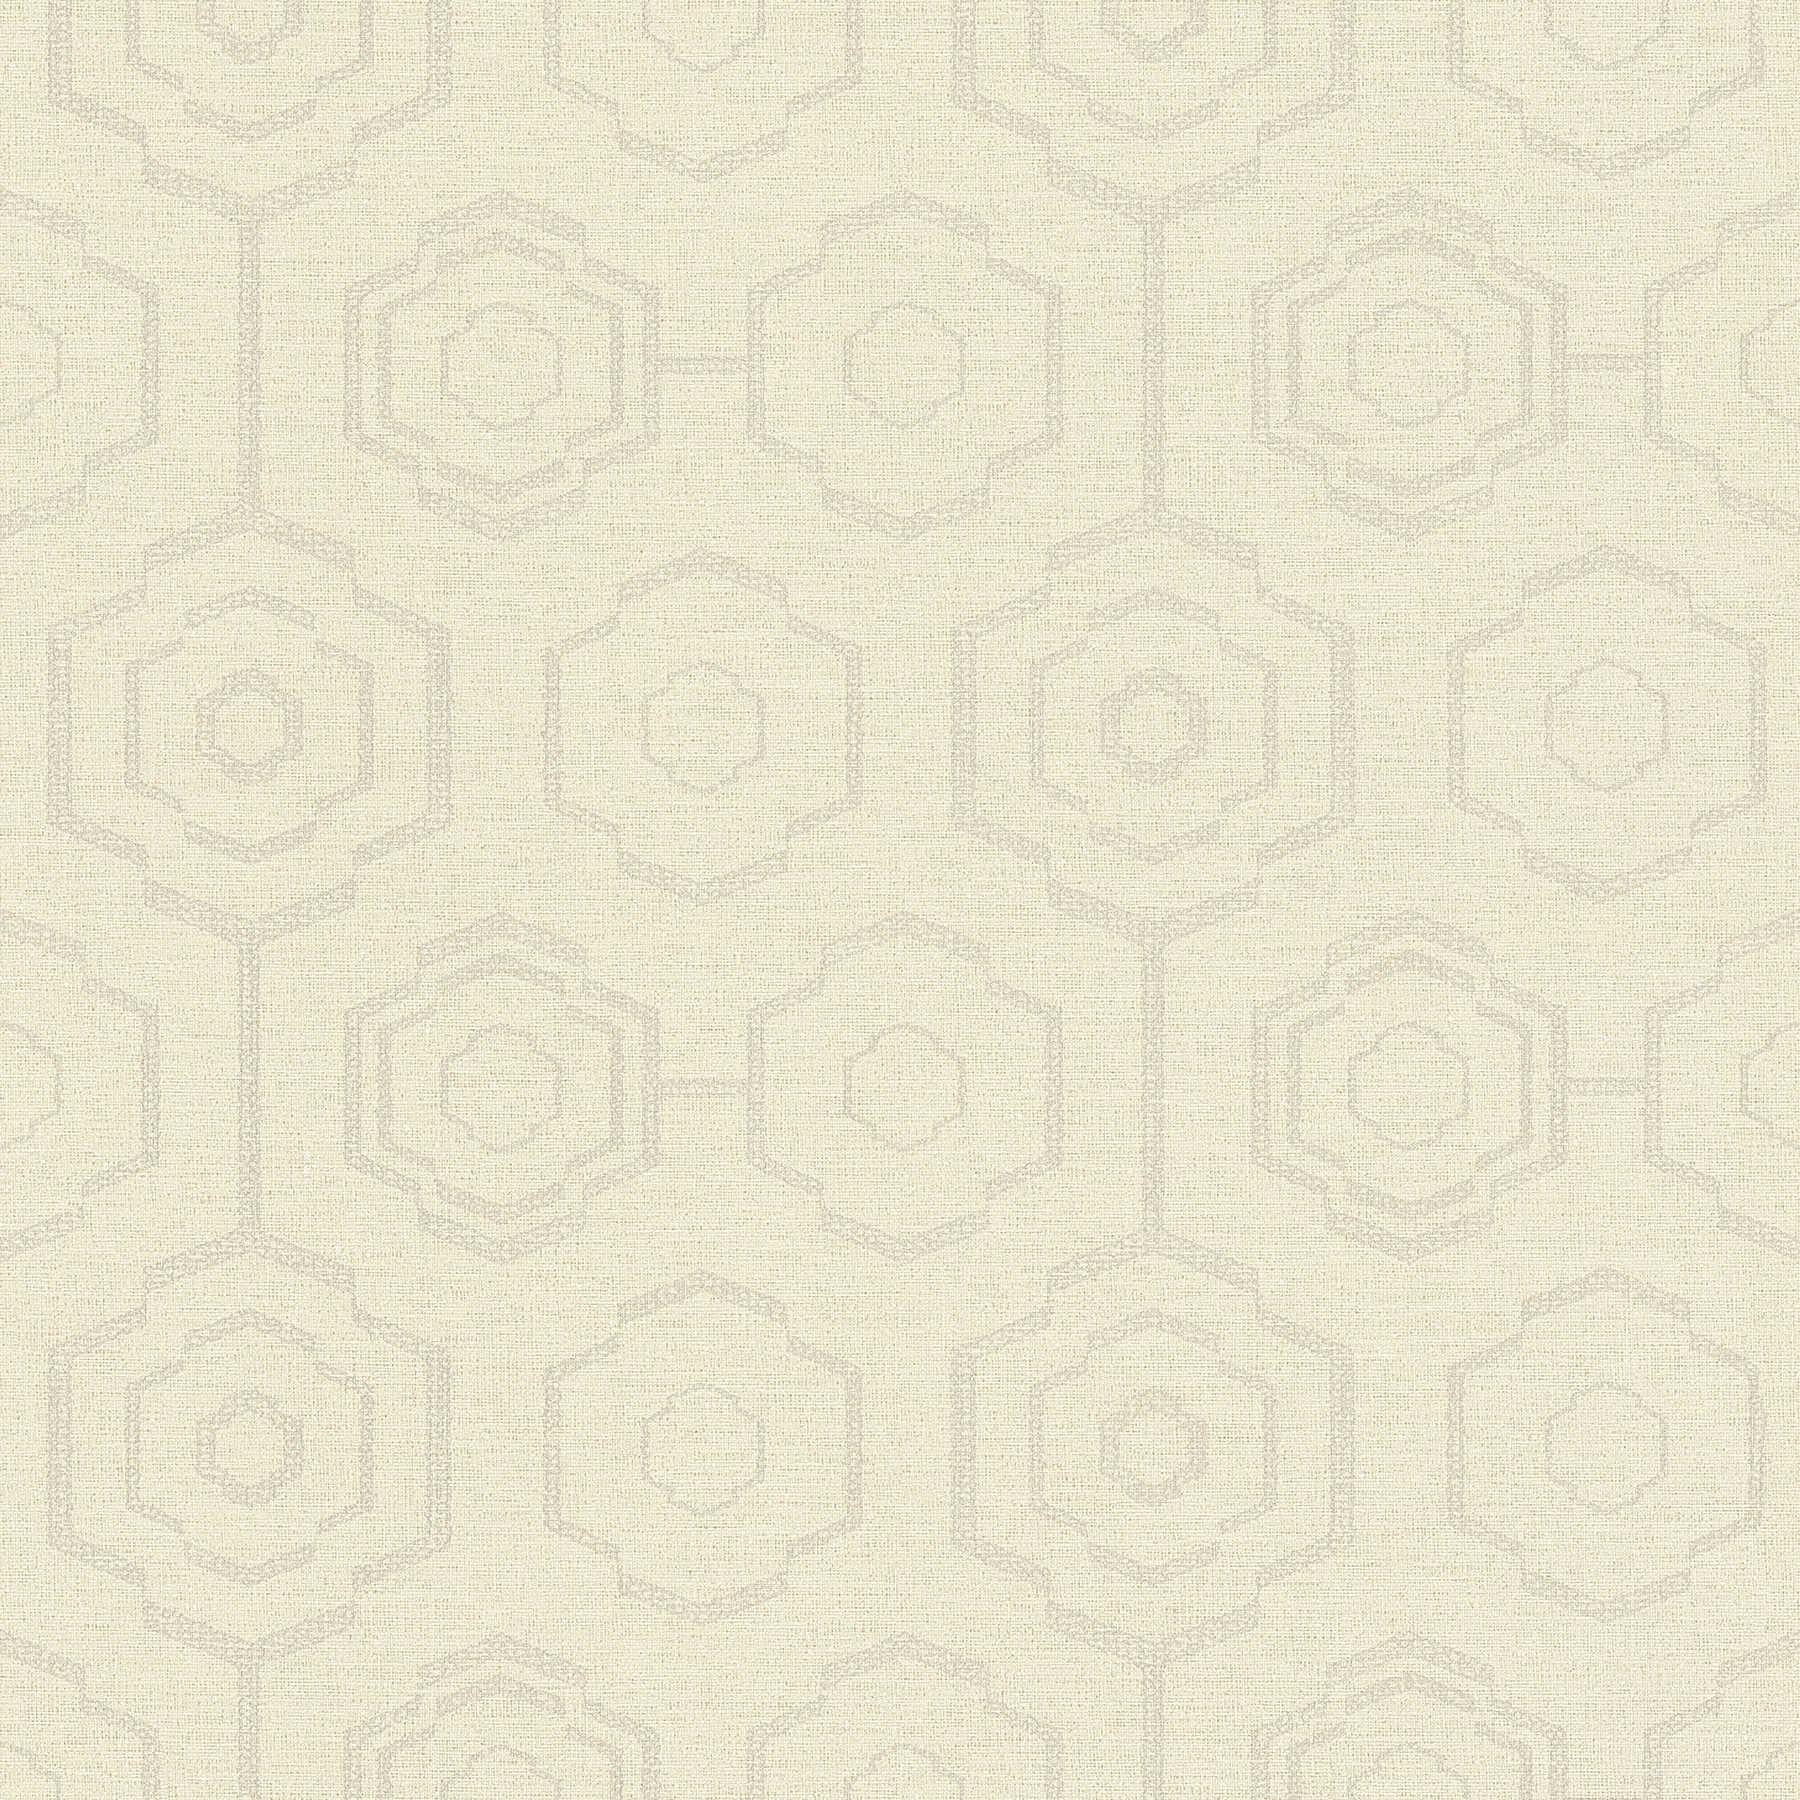 Textiel-look behang geometrisch design & glans effect - crème, grijs, beige
